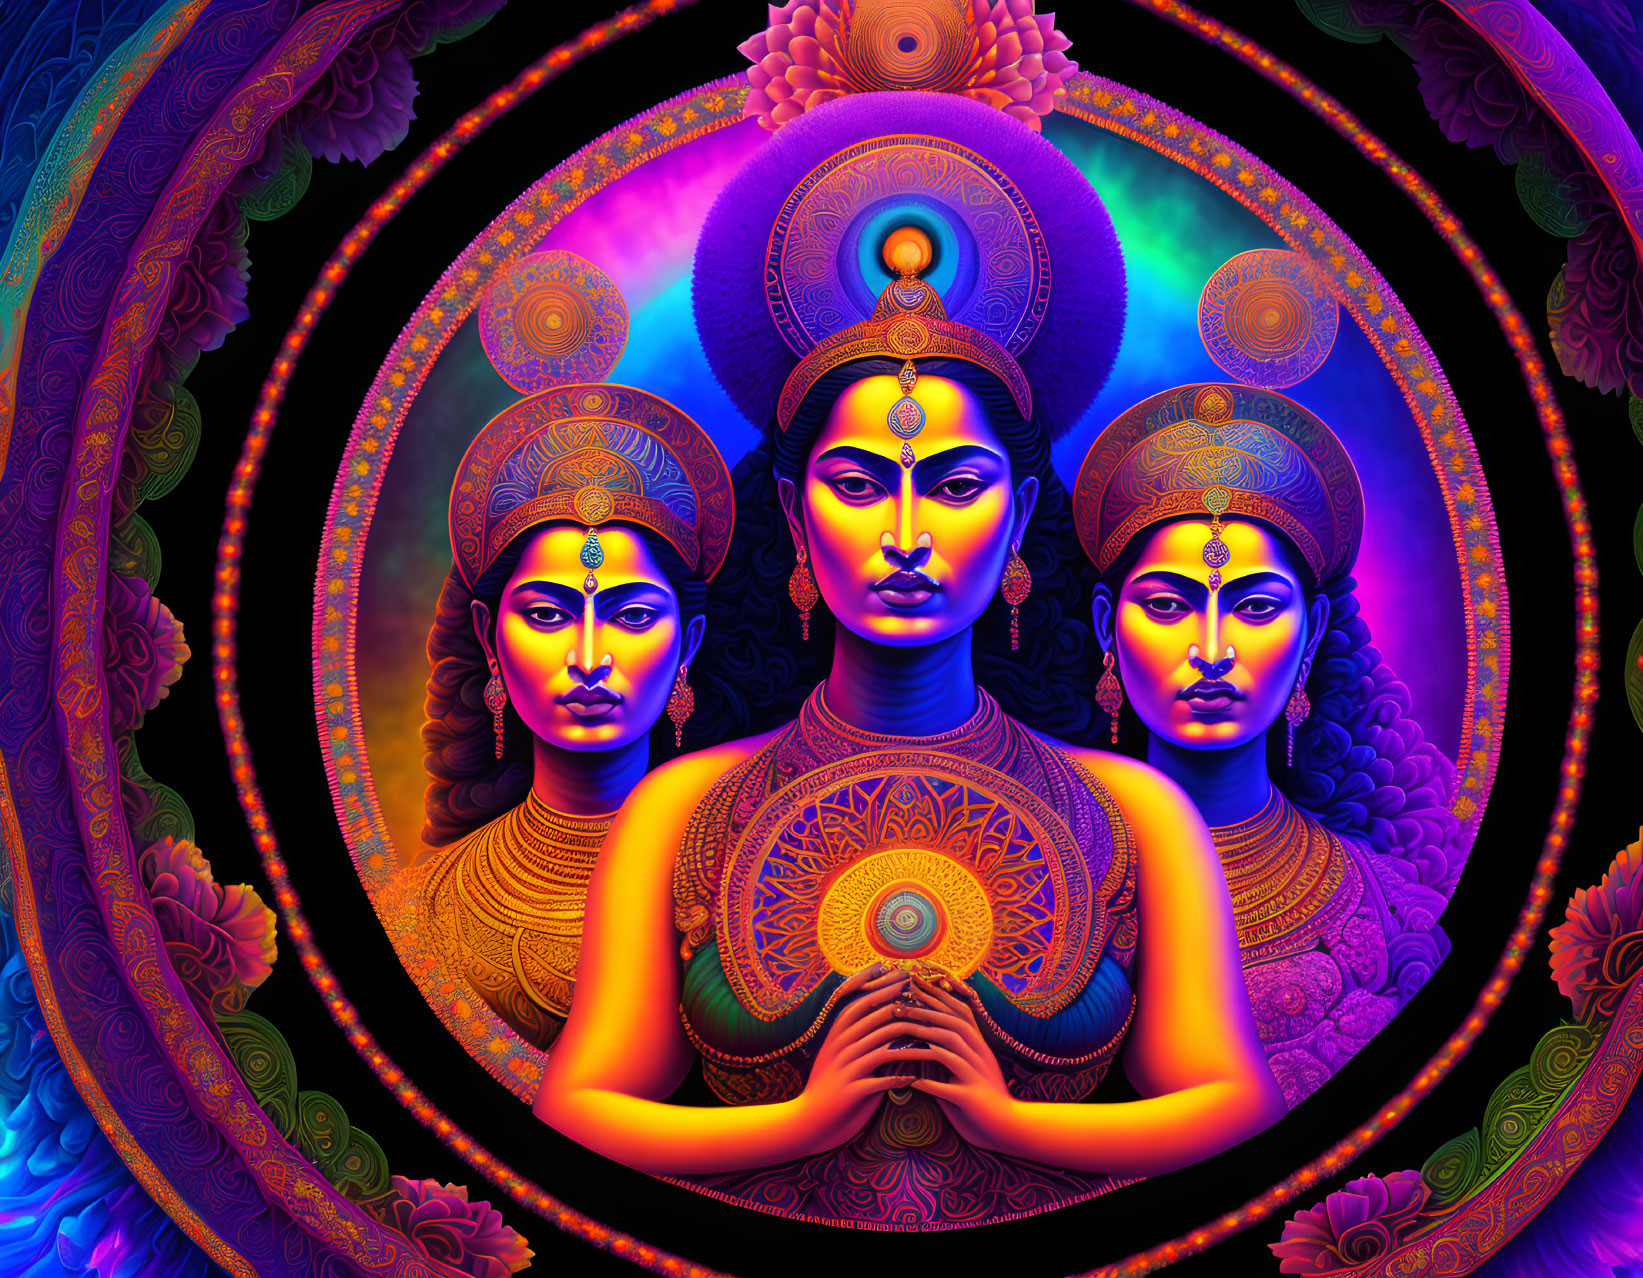 Goddess trio fractal mandala